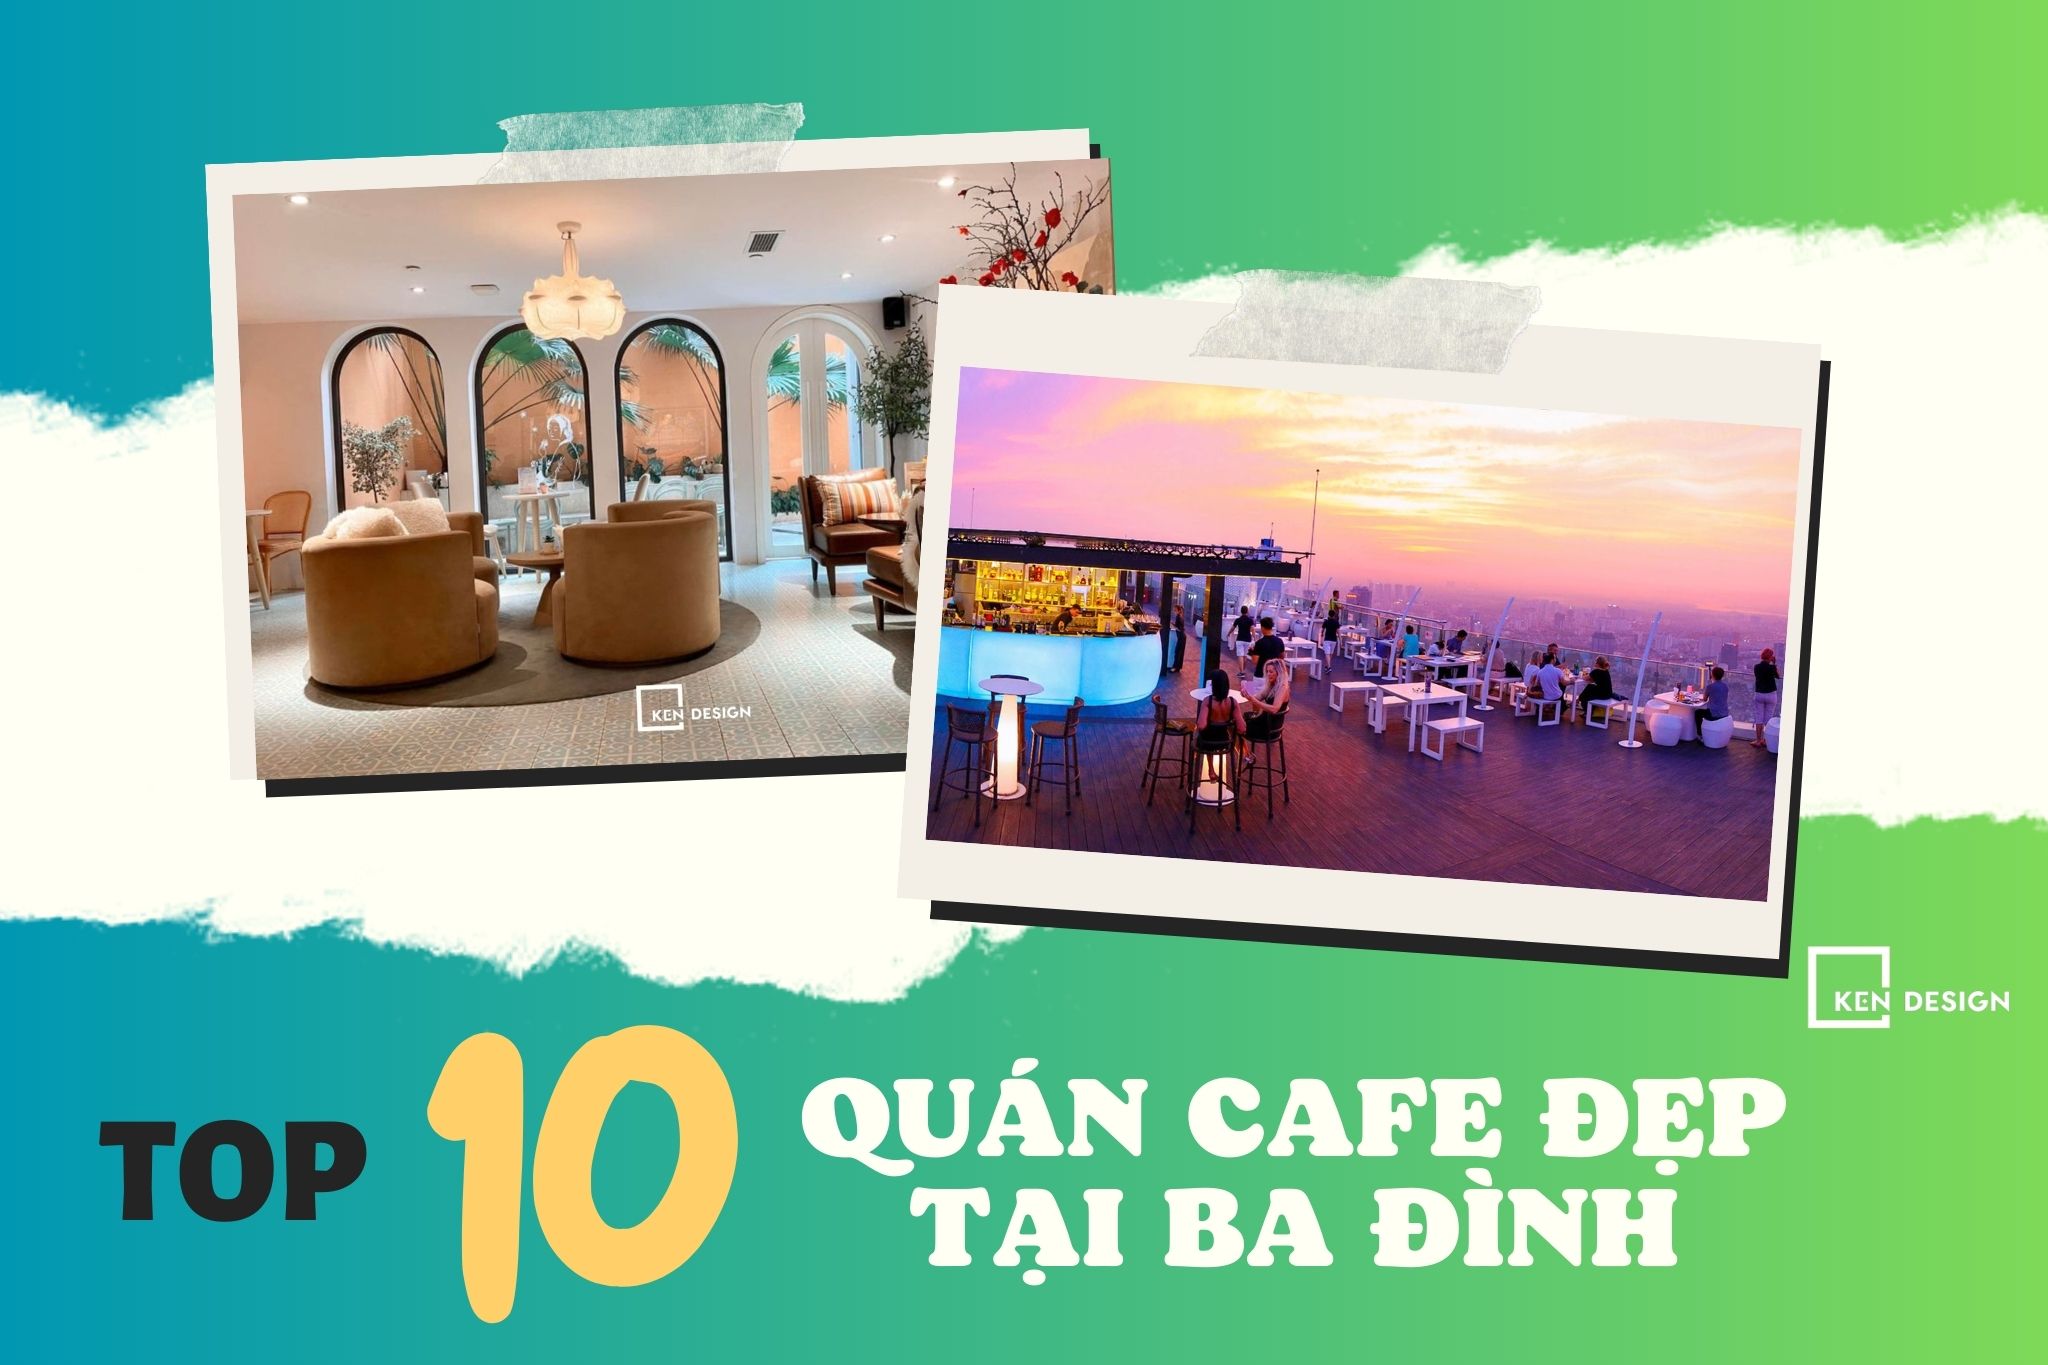 ​Top 10 quán cafe đẹp tại Ba Đình mà bạn không nên bỏ lỡ